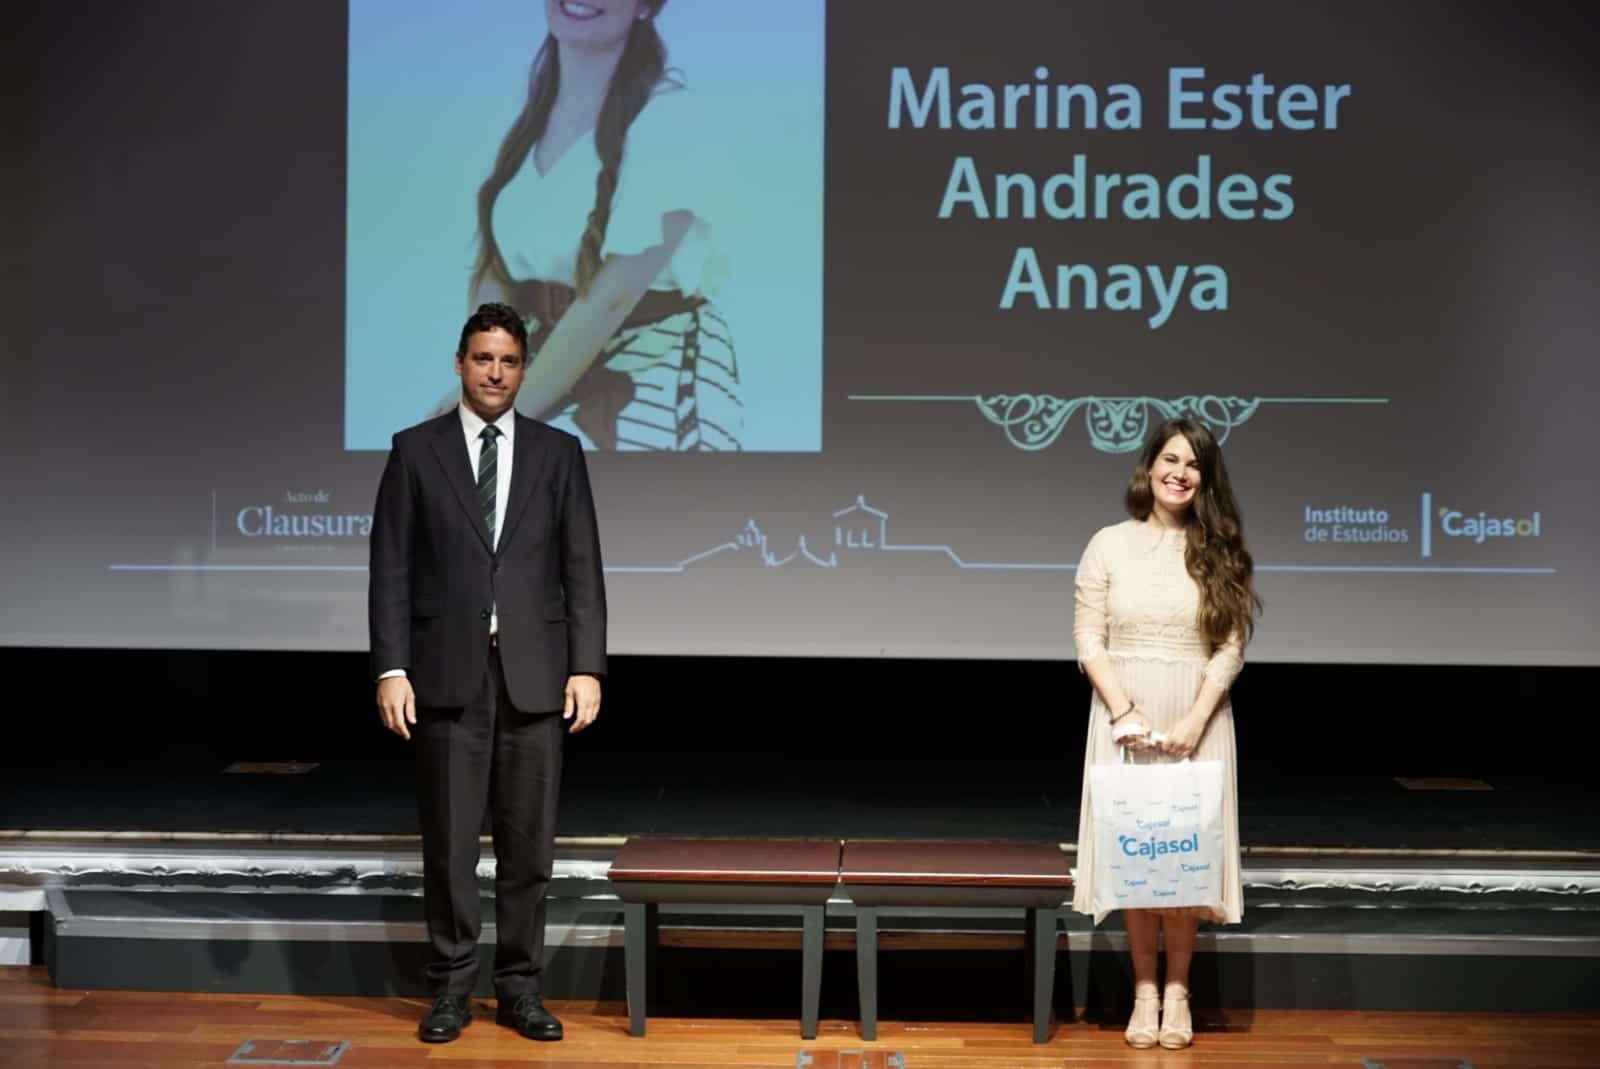 Marina Ester Andrades, mejor alumna del Máster en Negocios Internacionales del curso 19-20 en el Instituto de Estudios Cajasol